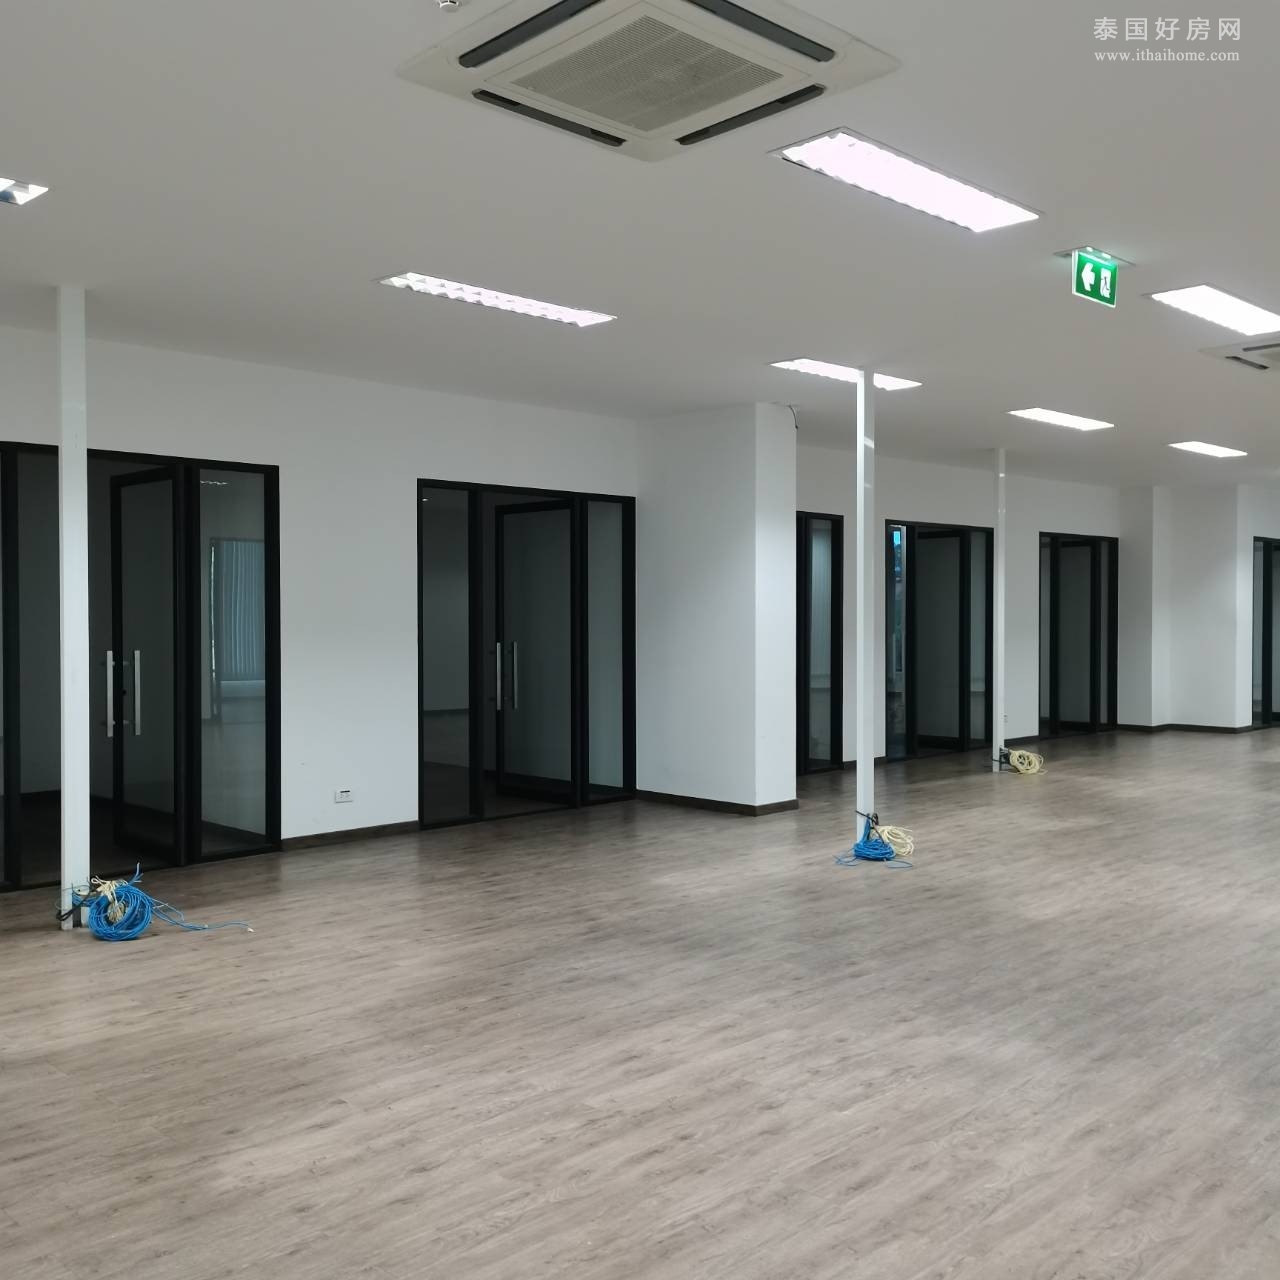 【推荐】Surin大楼办公室出租 4层2000+平米 480铢/平米/月 可整租可分租